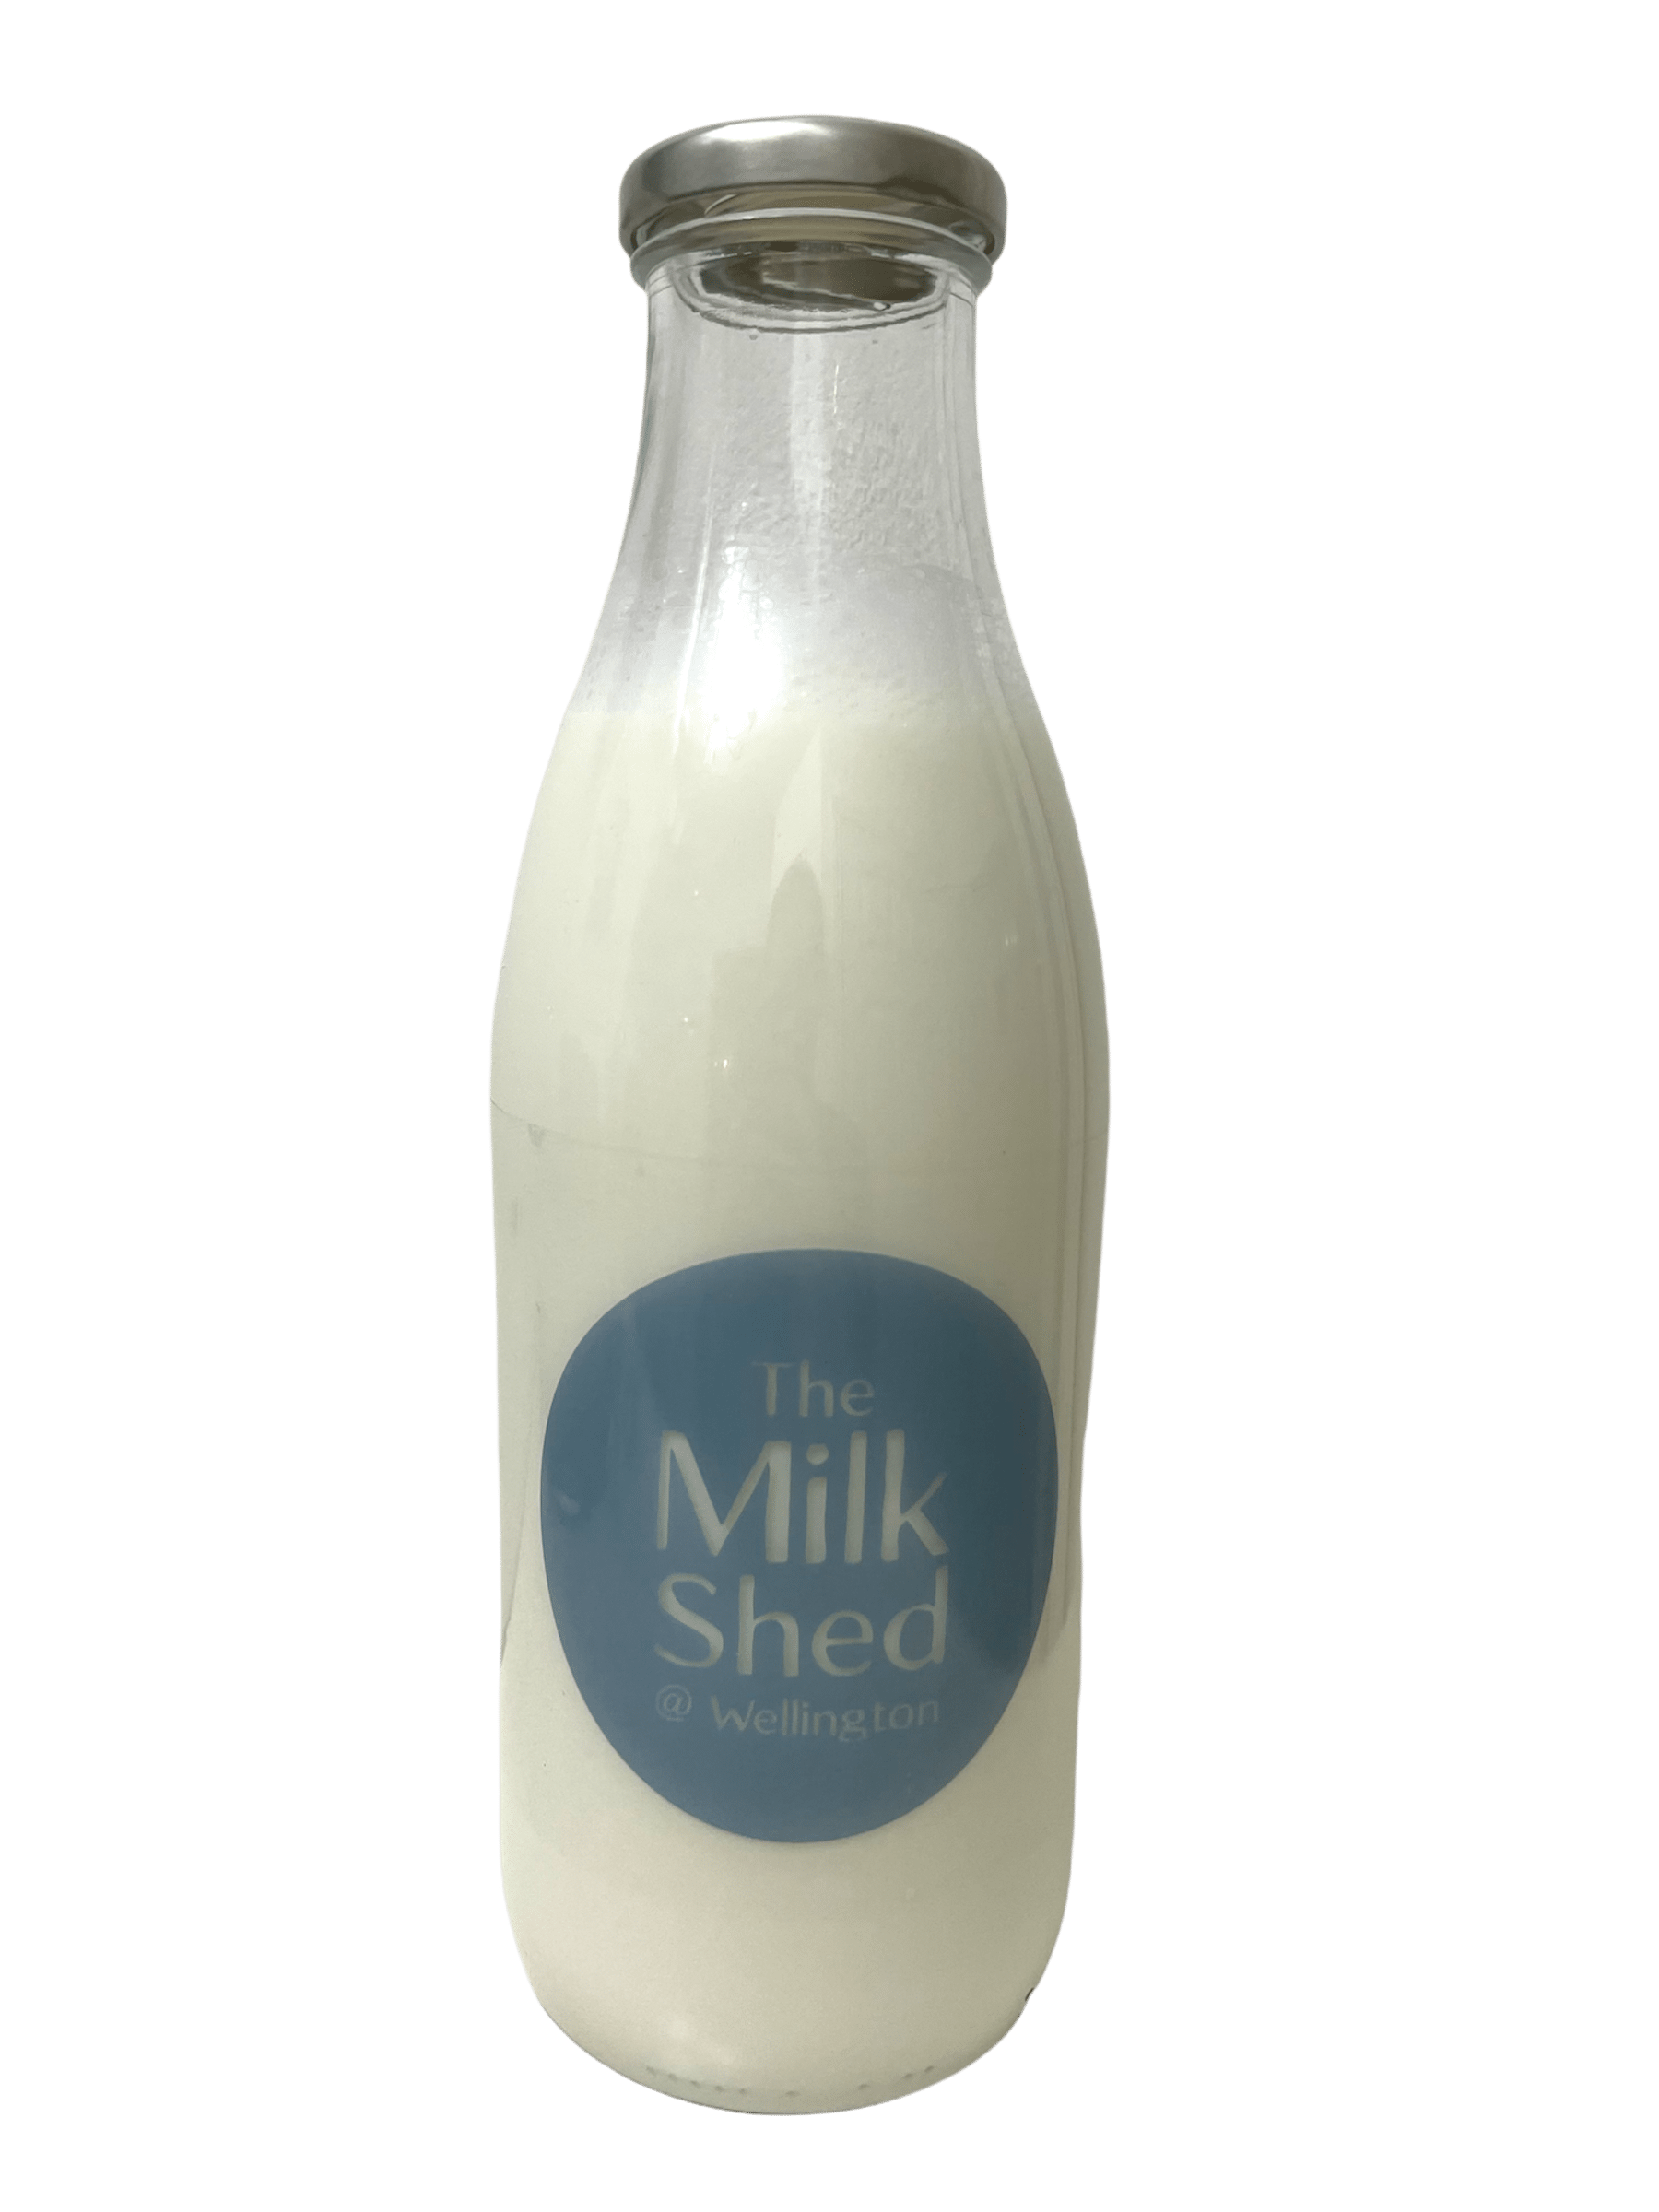 The Milk shed @ Wellington - Kelis.info